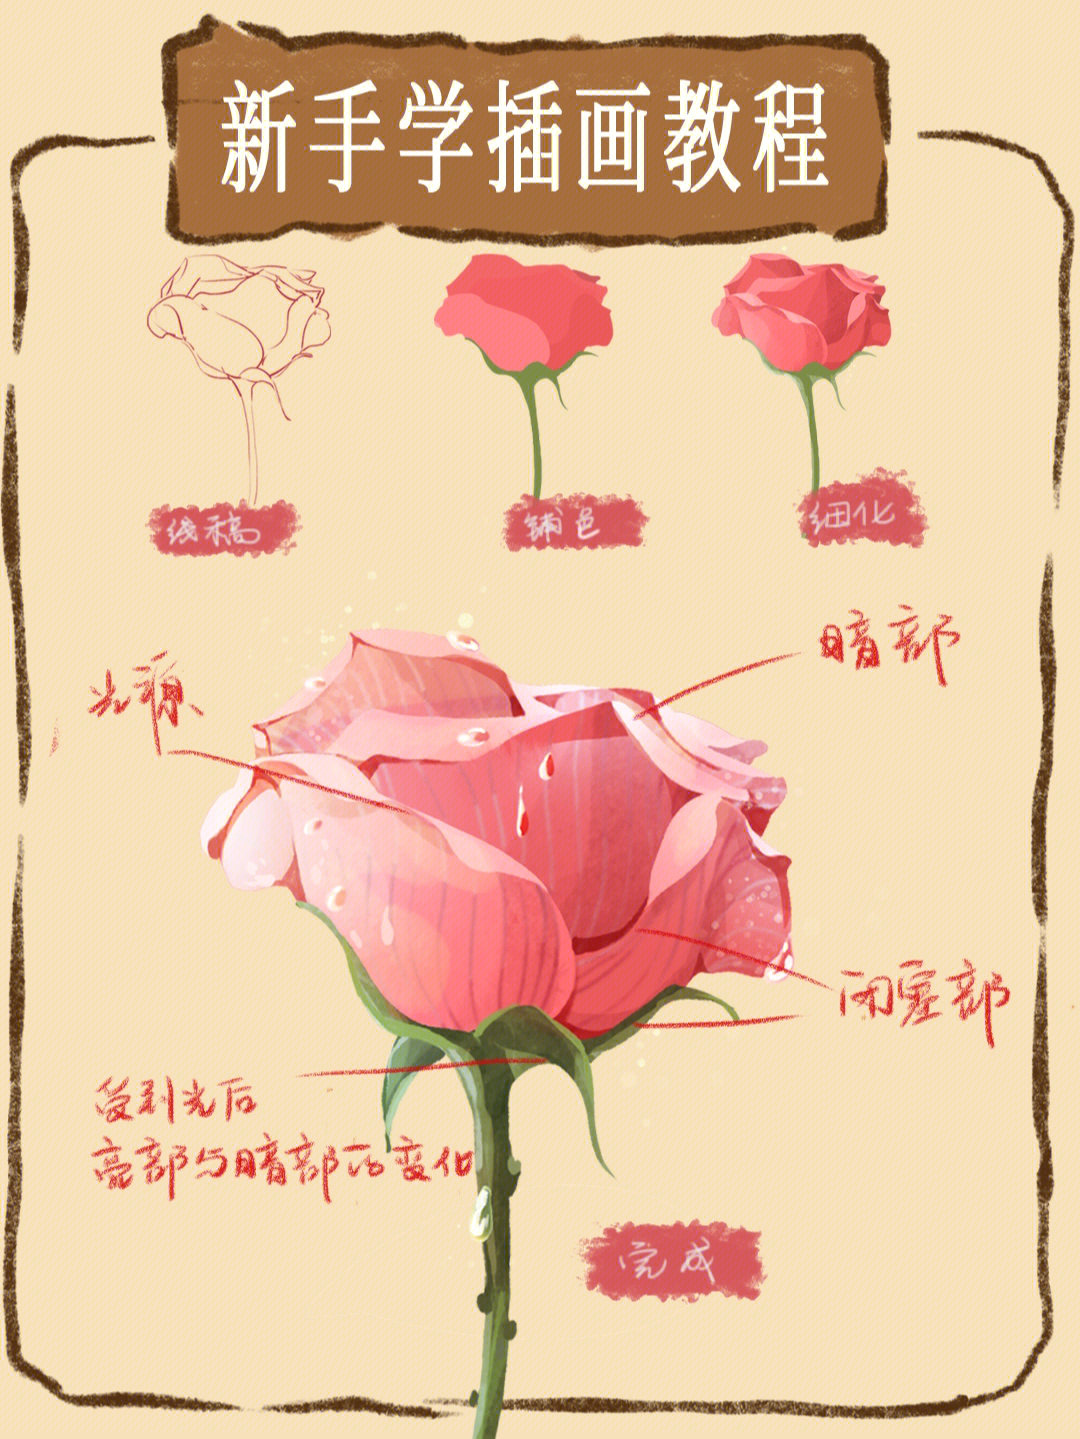 玫瑰花解剖结构图图片